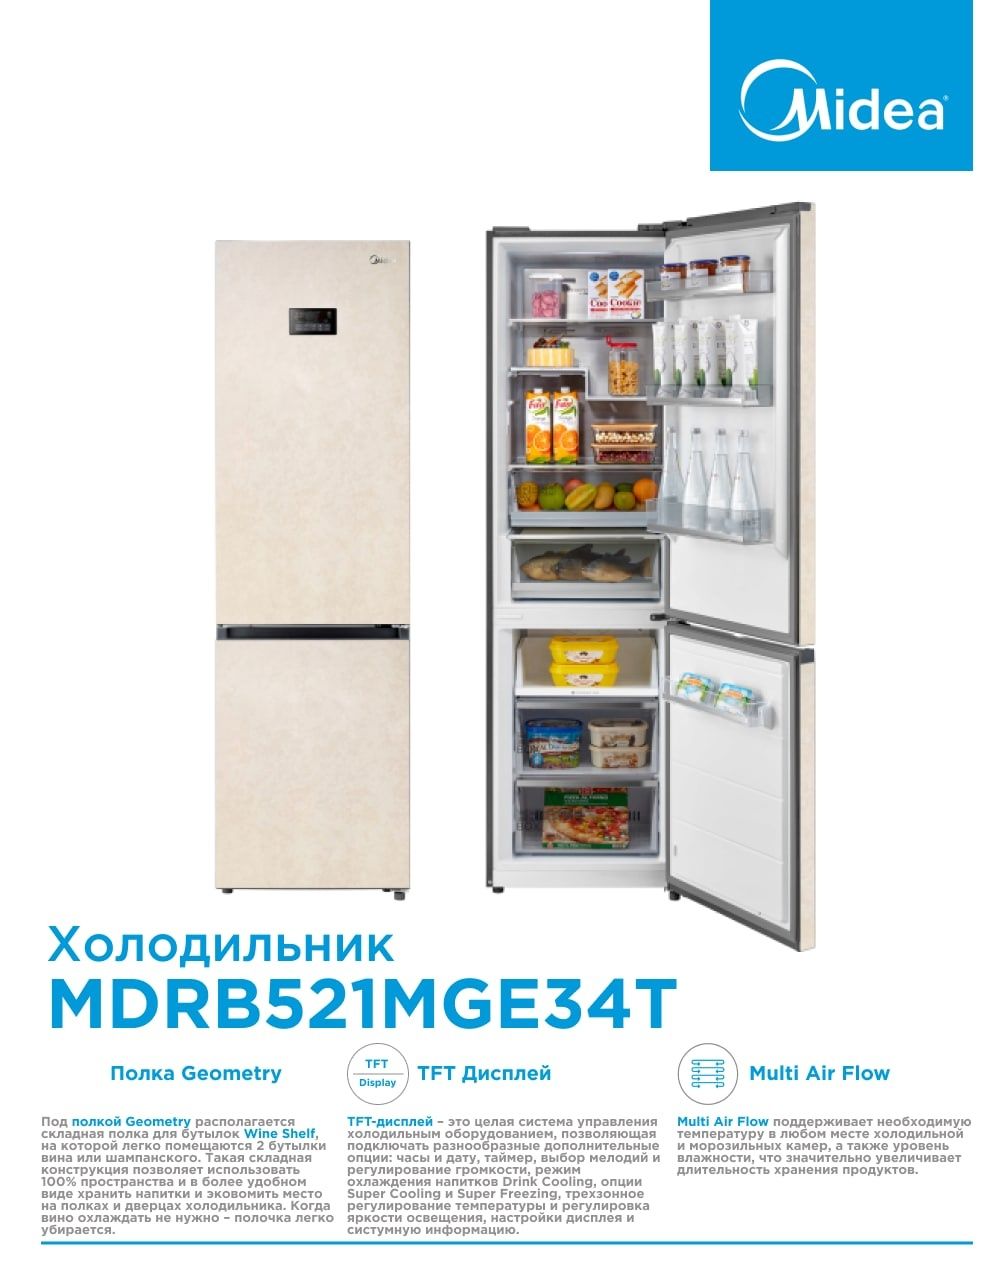 Холодильник Midea модель : MDRB521MGE34T